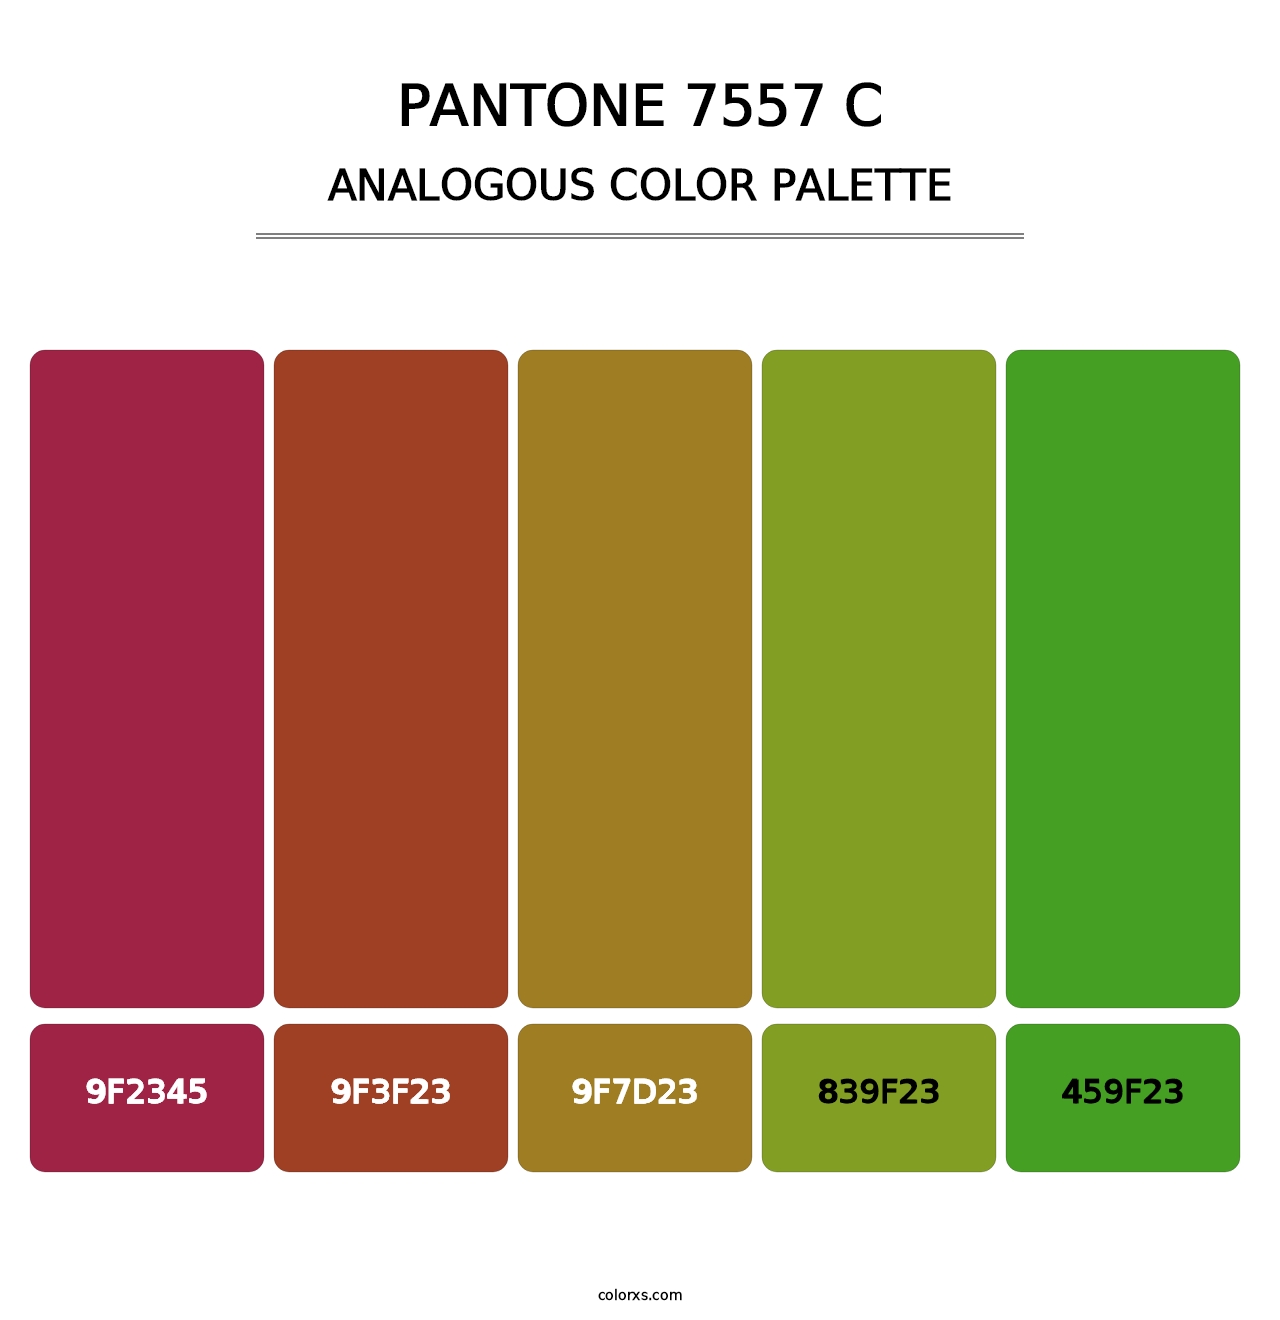 PANTONE 7557 C - Analogous Color Palette